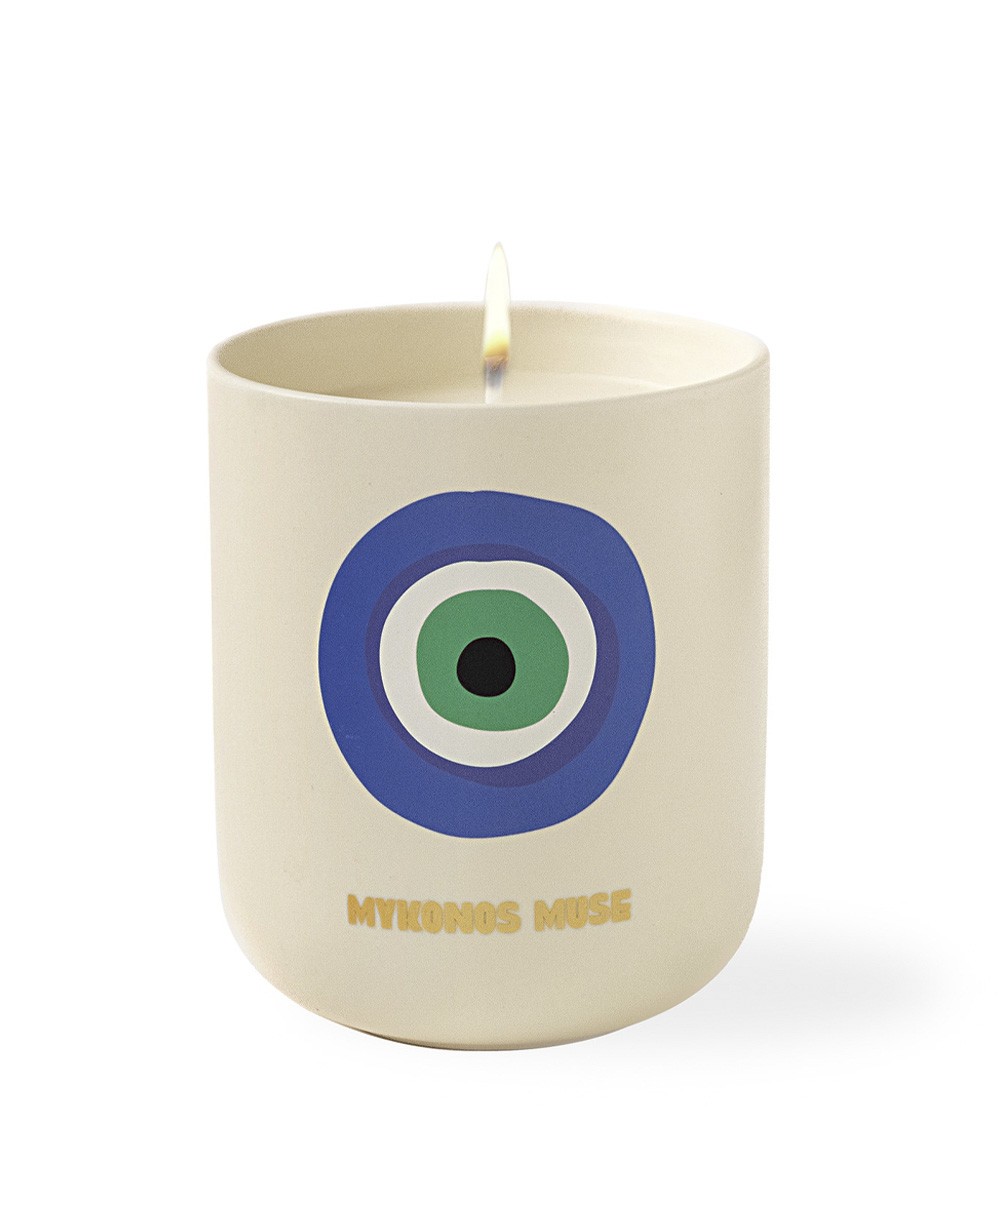 Dieses Bild zeigt das Produktbild der Travel from Home Candle Mykonos Muse von Assouline im RAUM concept store